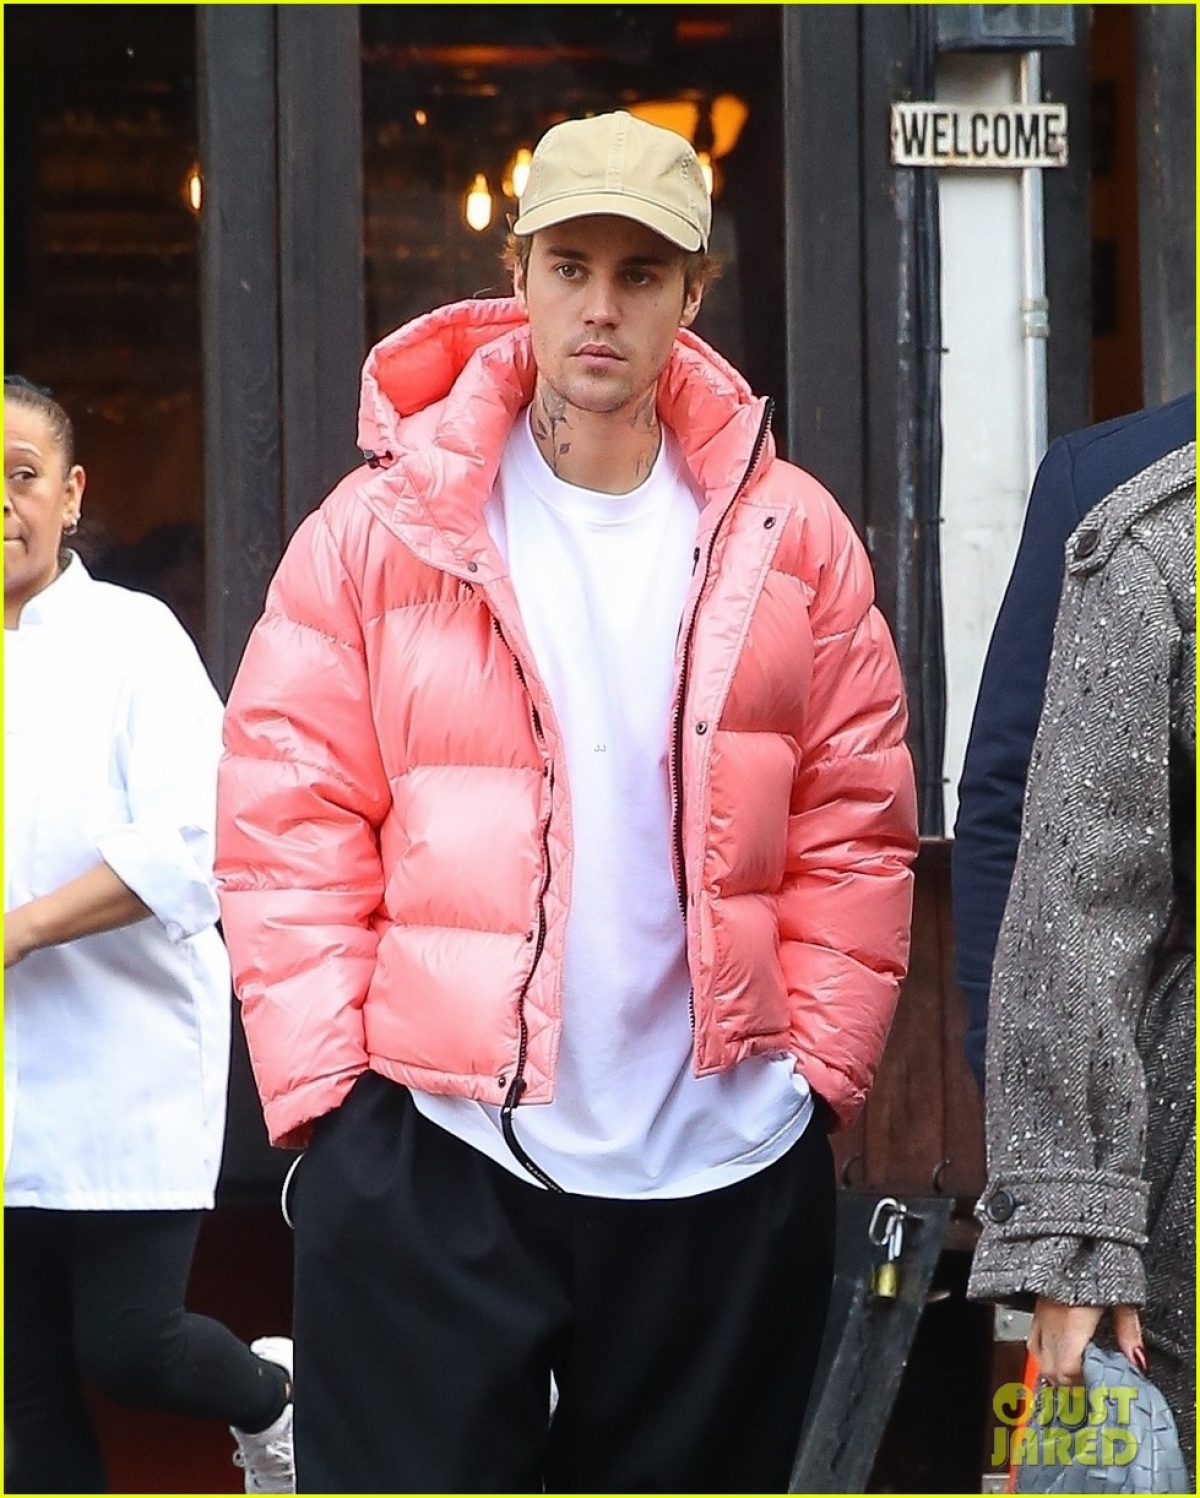 Justin Bieber diện áo hồng nổi bật, vui vẻ đi chơi cùng bà xã Hailey Baldwin - Ảnh 2.